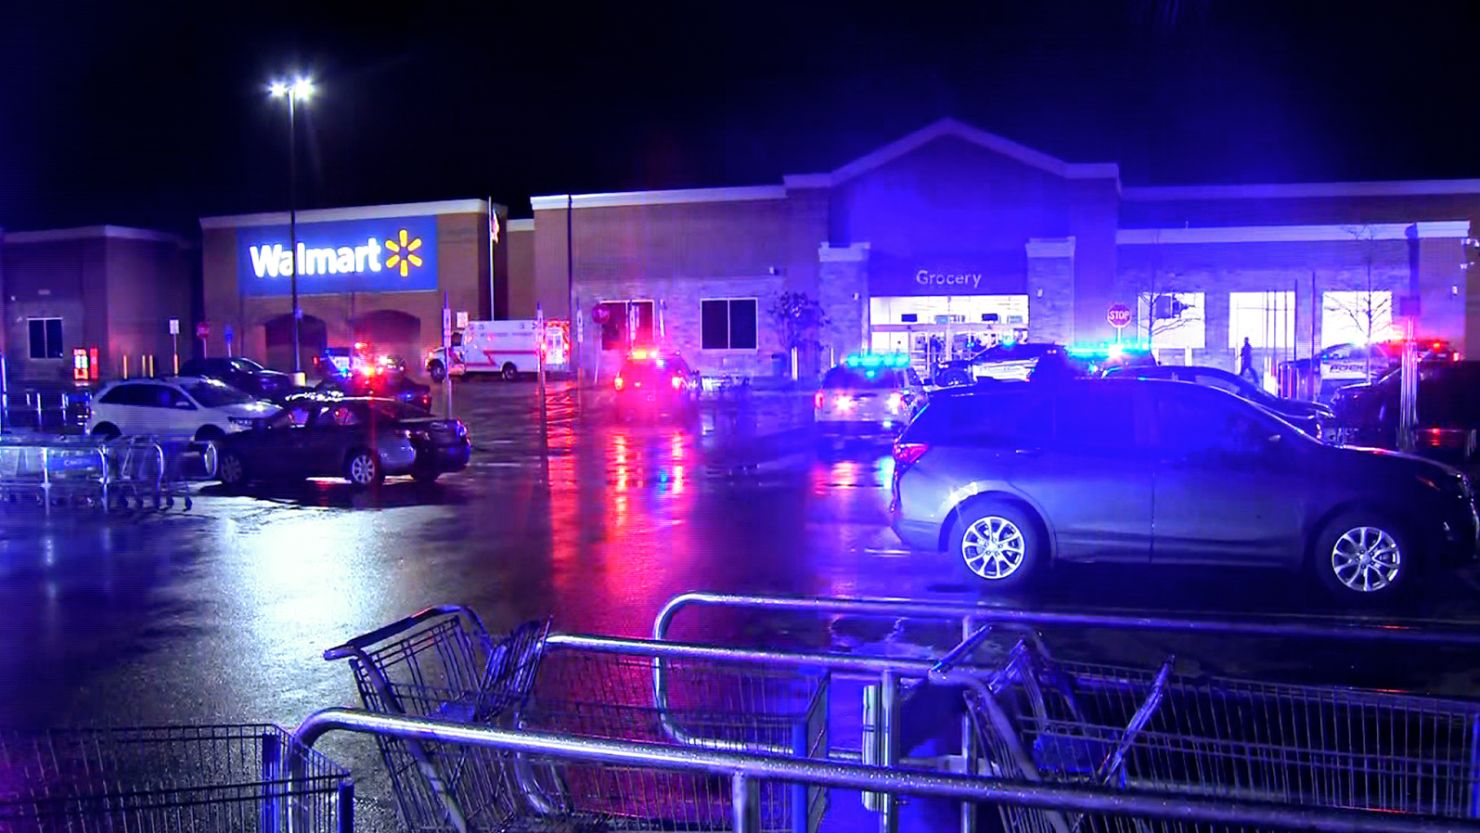 Walmart Beavercreek shooting Gunman dies after 4 wounded near Dayton